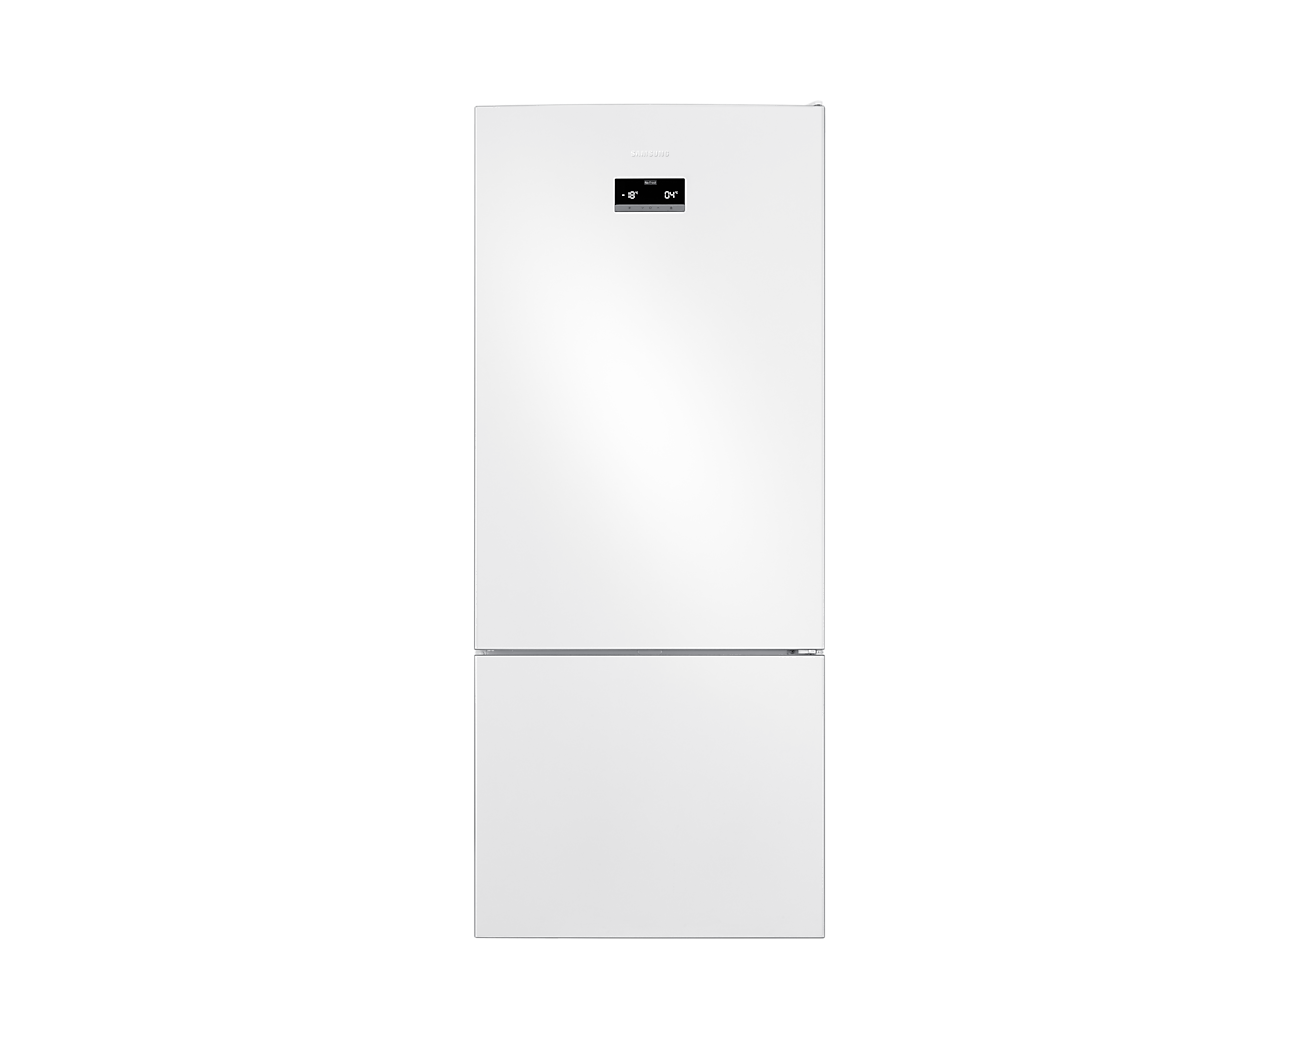 Samsung RB50RS334WW/TR Kombi No Frost Beyaz Buzdolabı